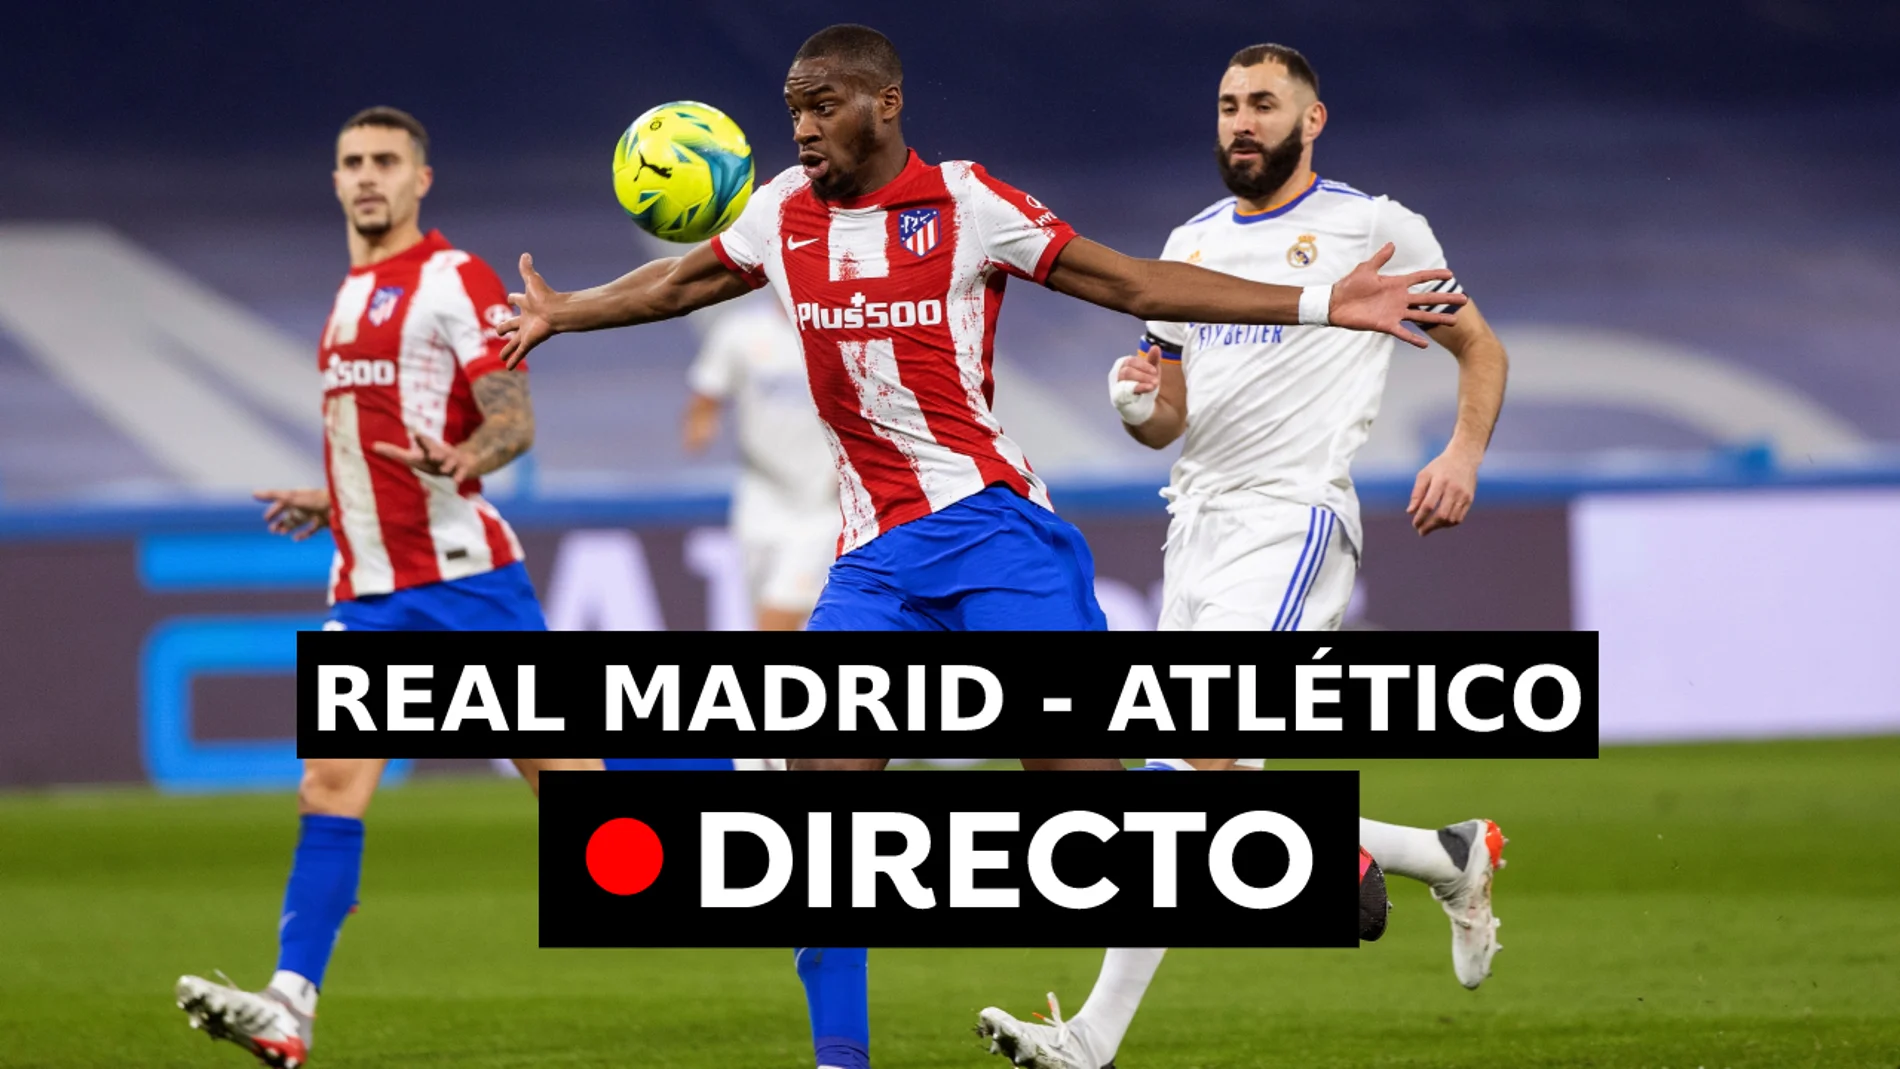 Real Madrid - Atlético de Madrid: Resultado y goles de hoy, en directo